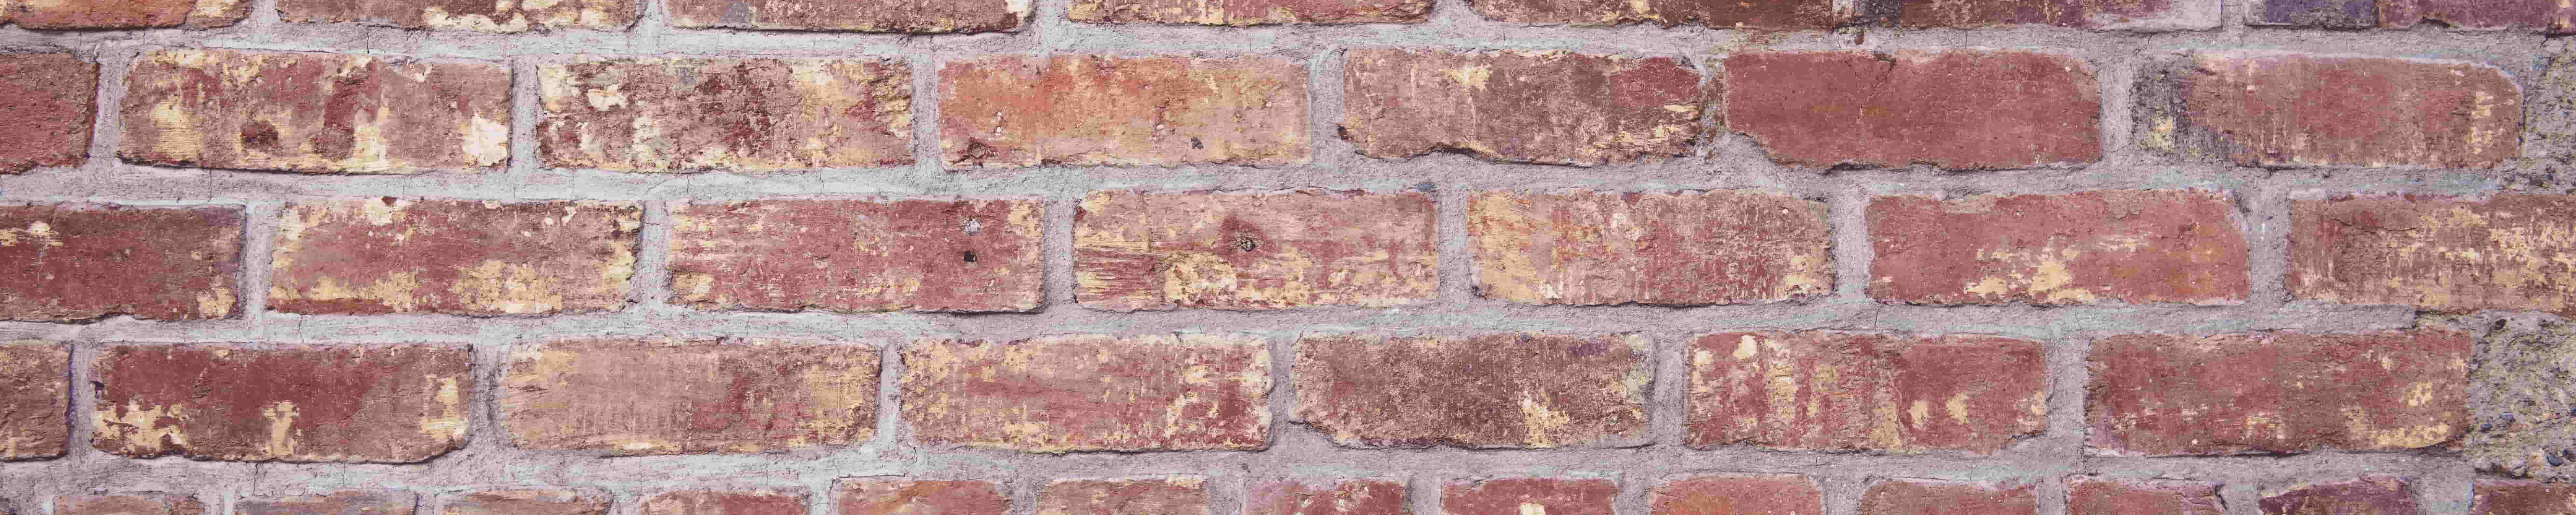 Brick wall - banner 